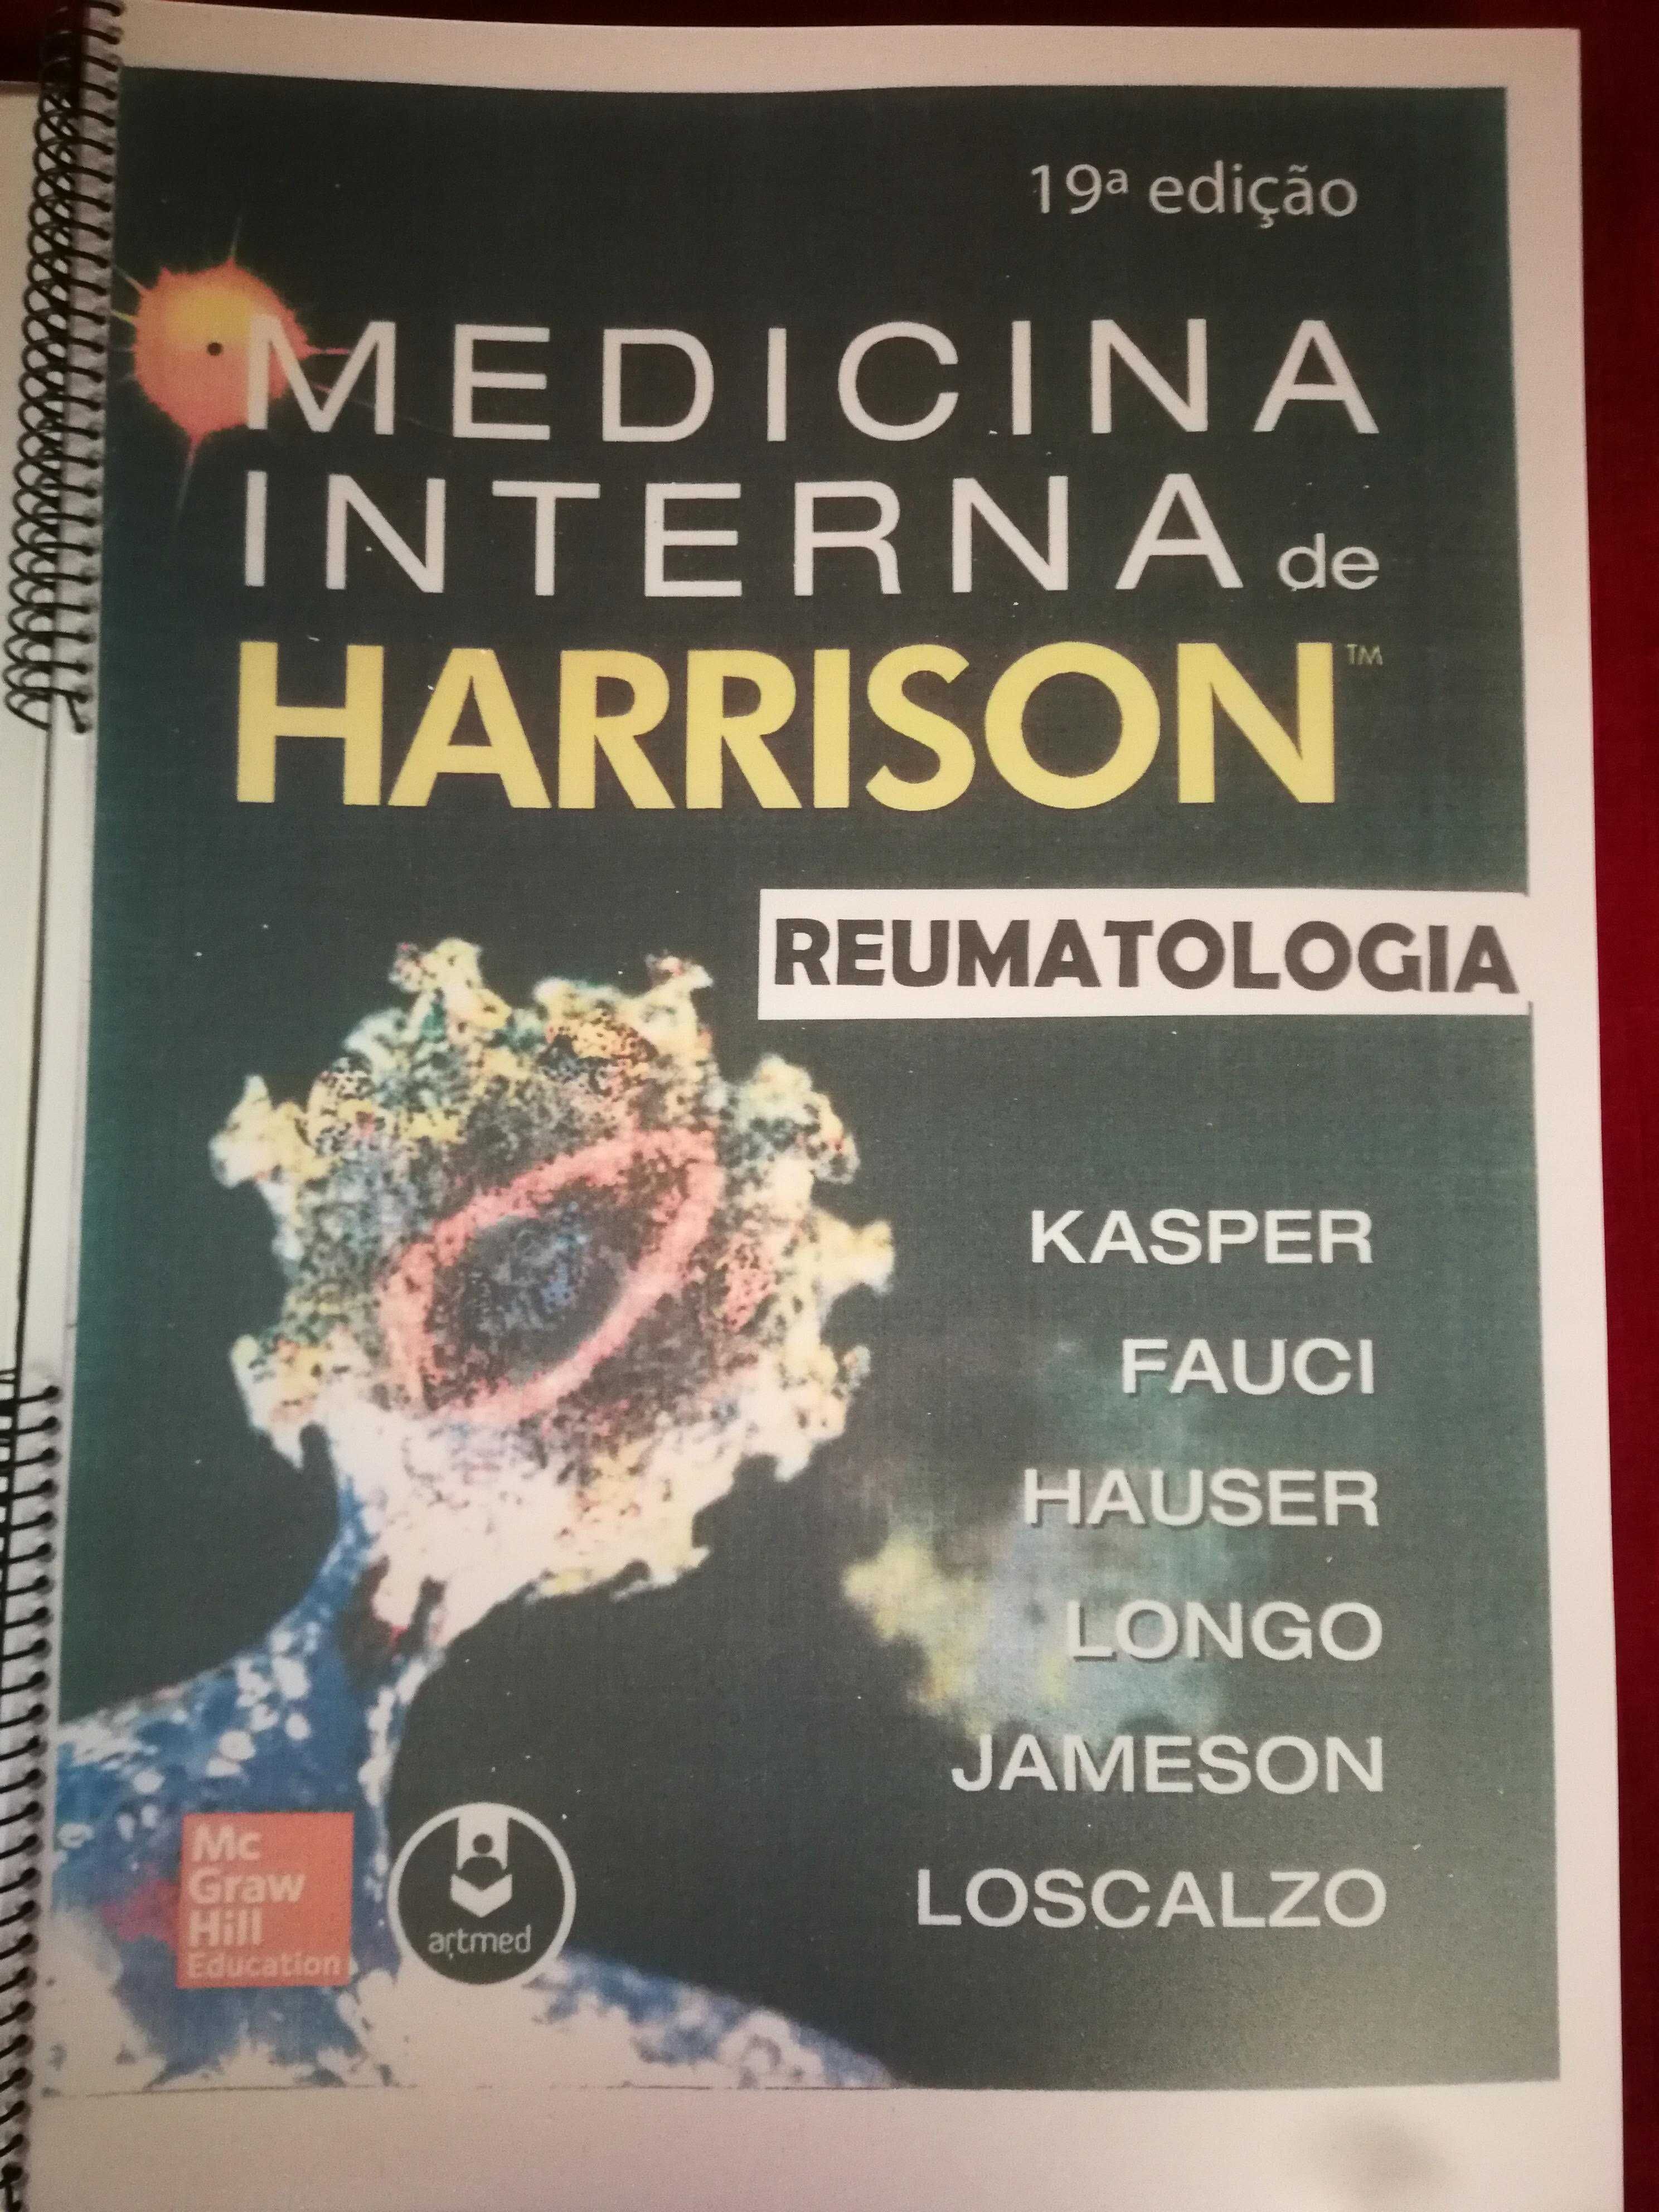 Harrison 19.a edição